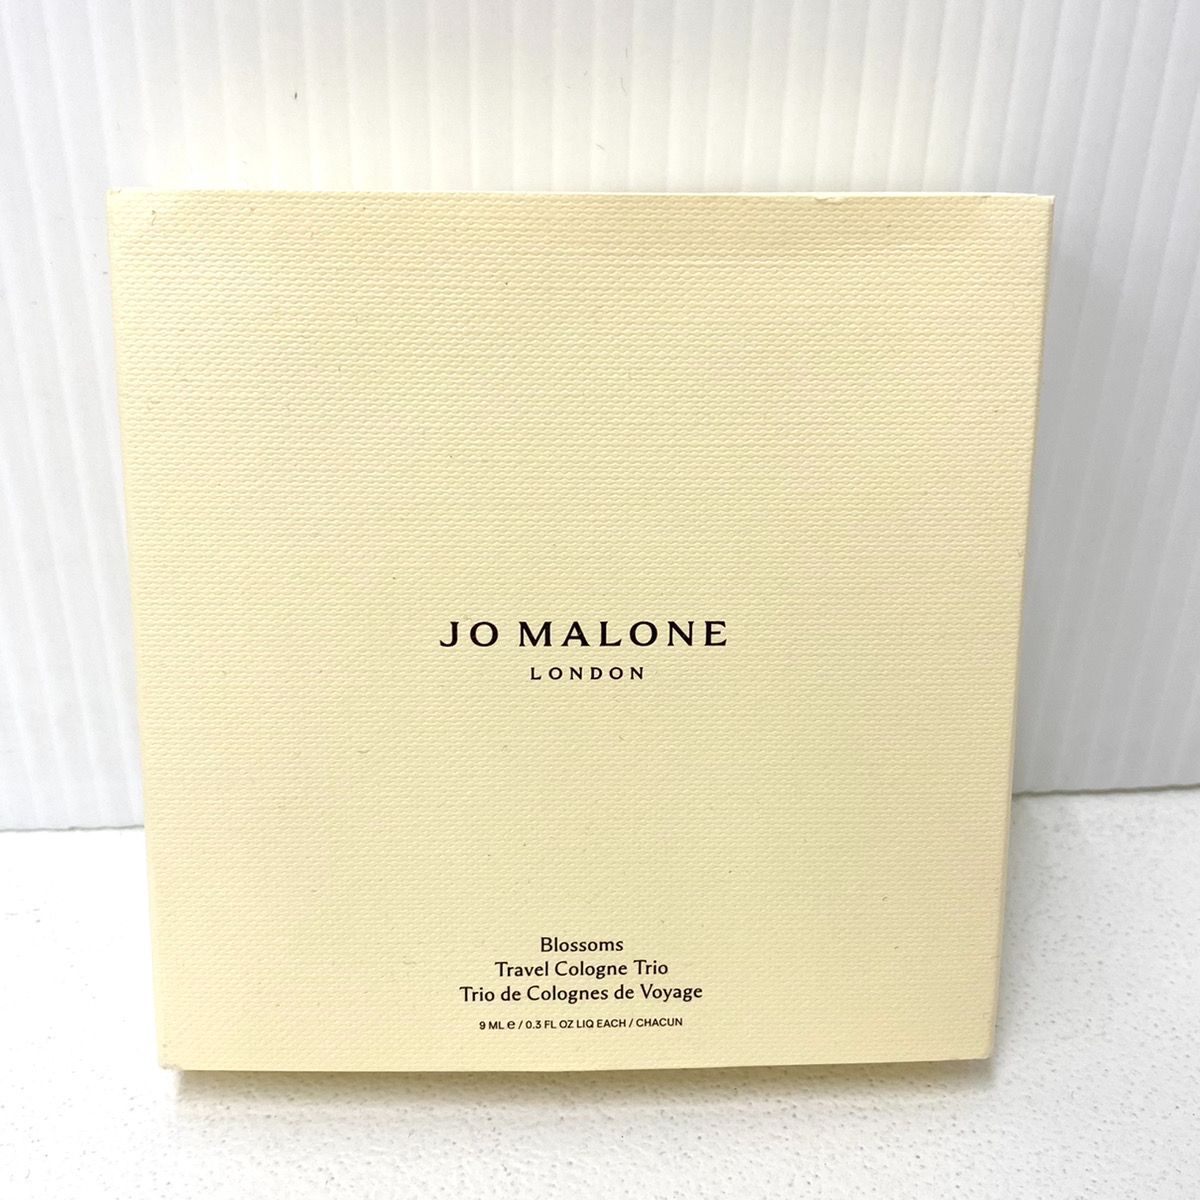 JO MALONE LONDON ジョー マローン ロンドン 9ml 香水 3本セット ナシ ブロッサム、スター マグノリア、オスマンサス